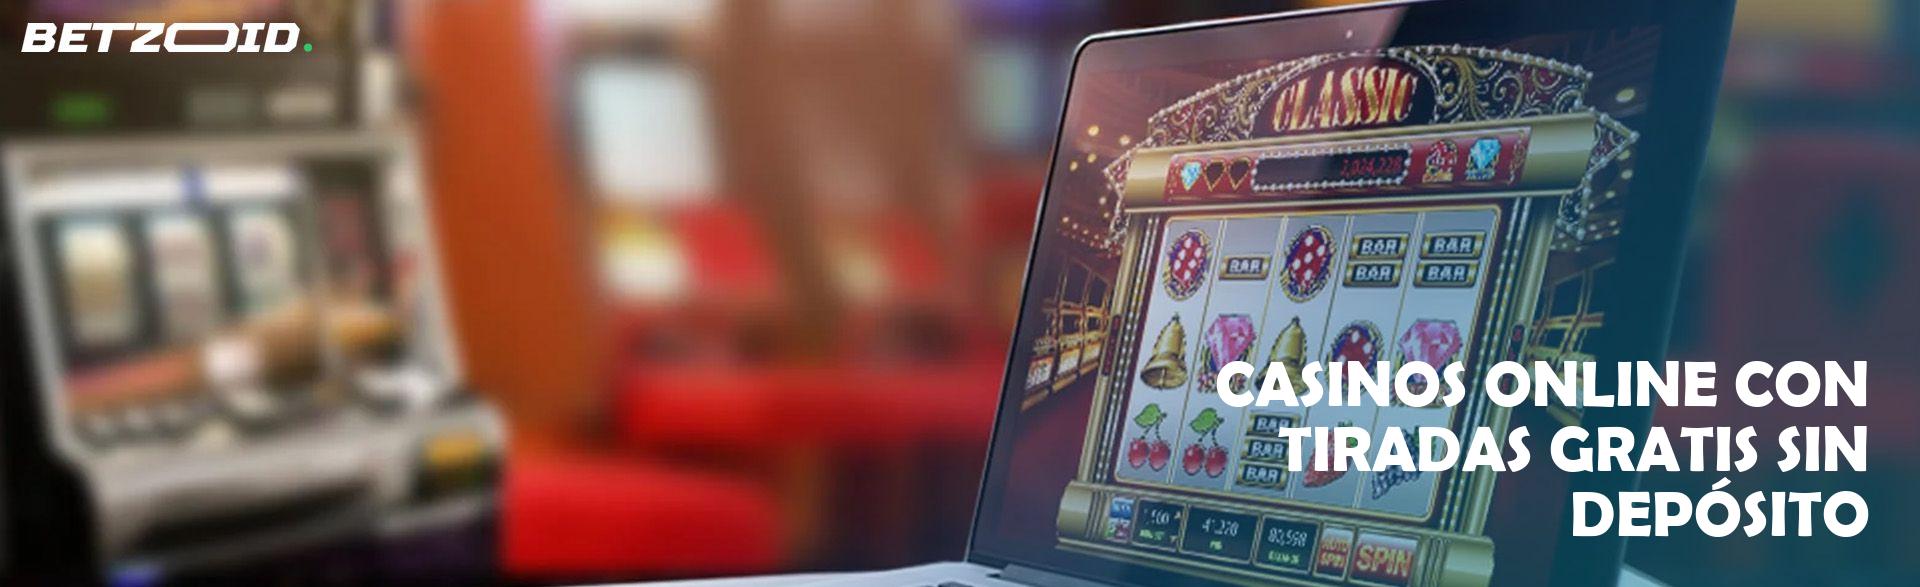 Casinos Online con Tiradas Gratis sin Depósito.